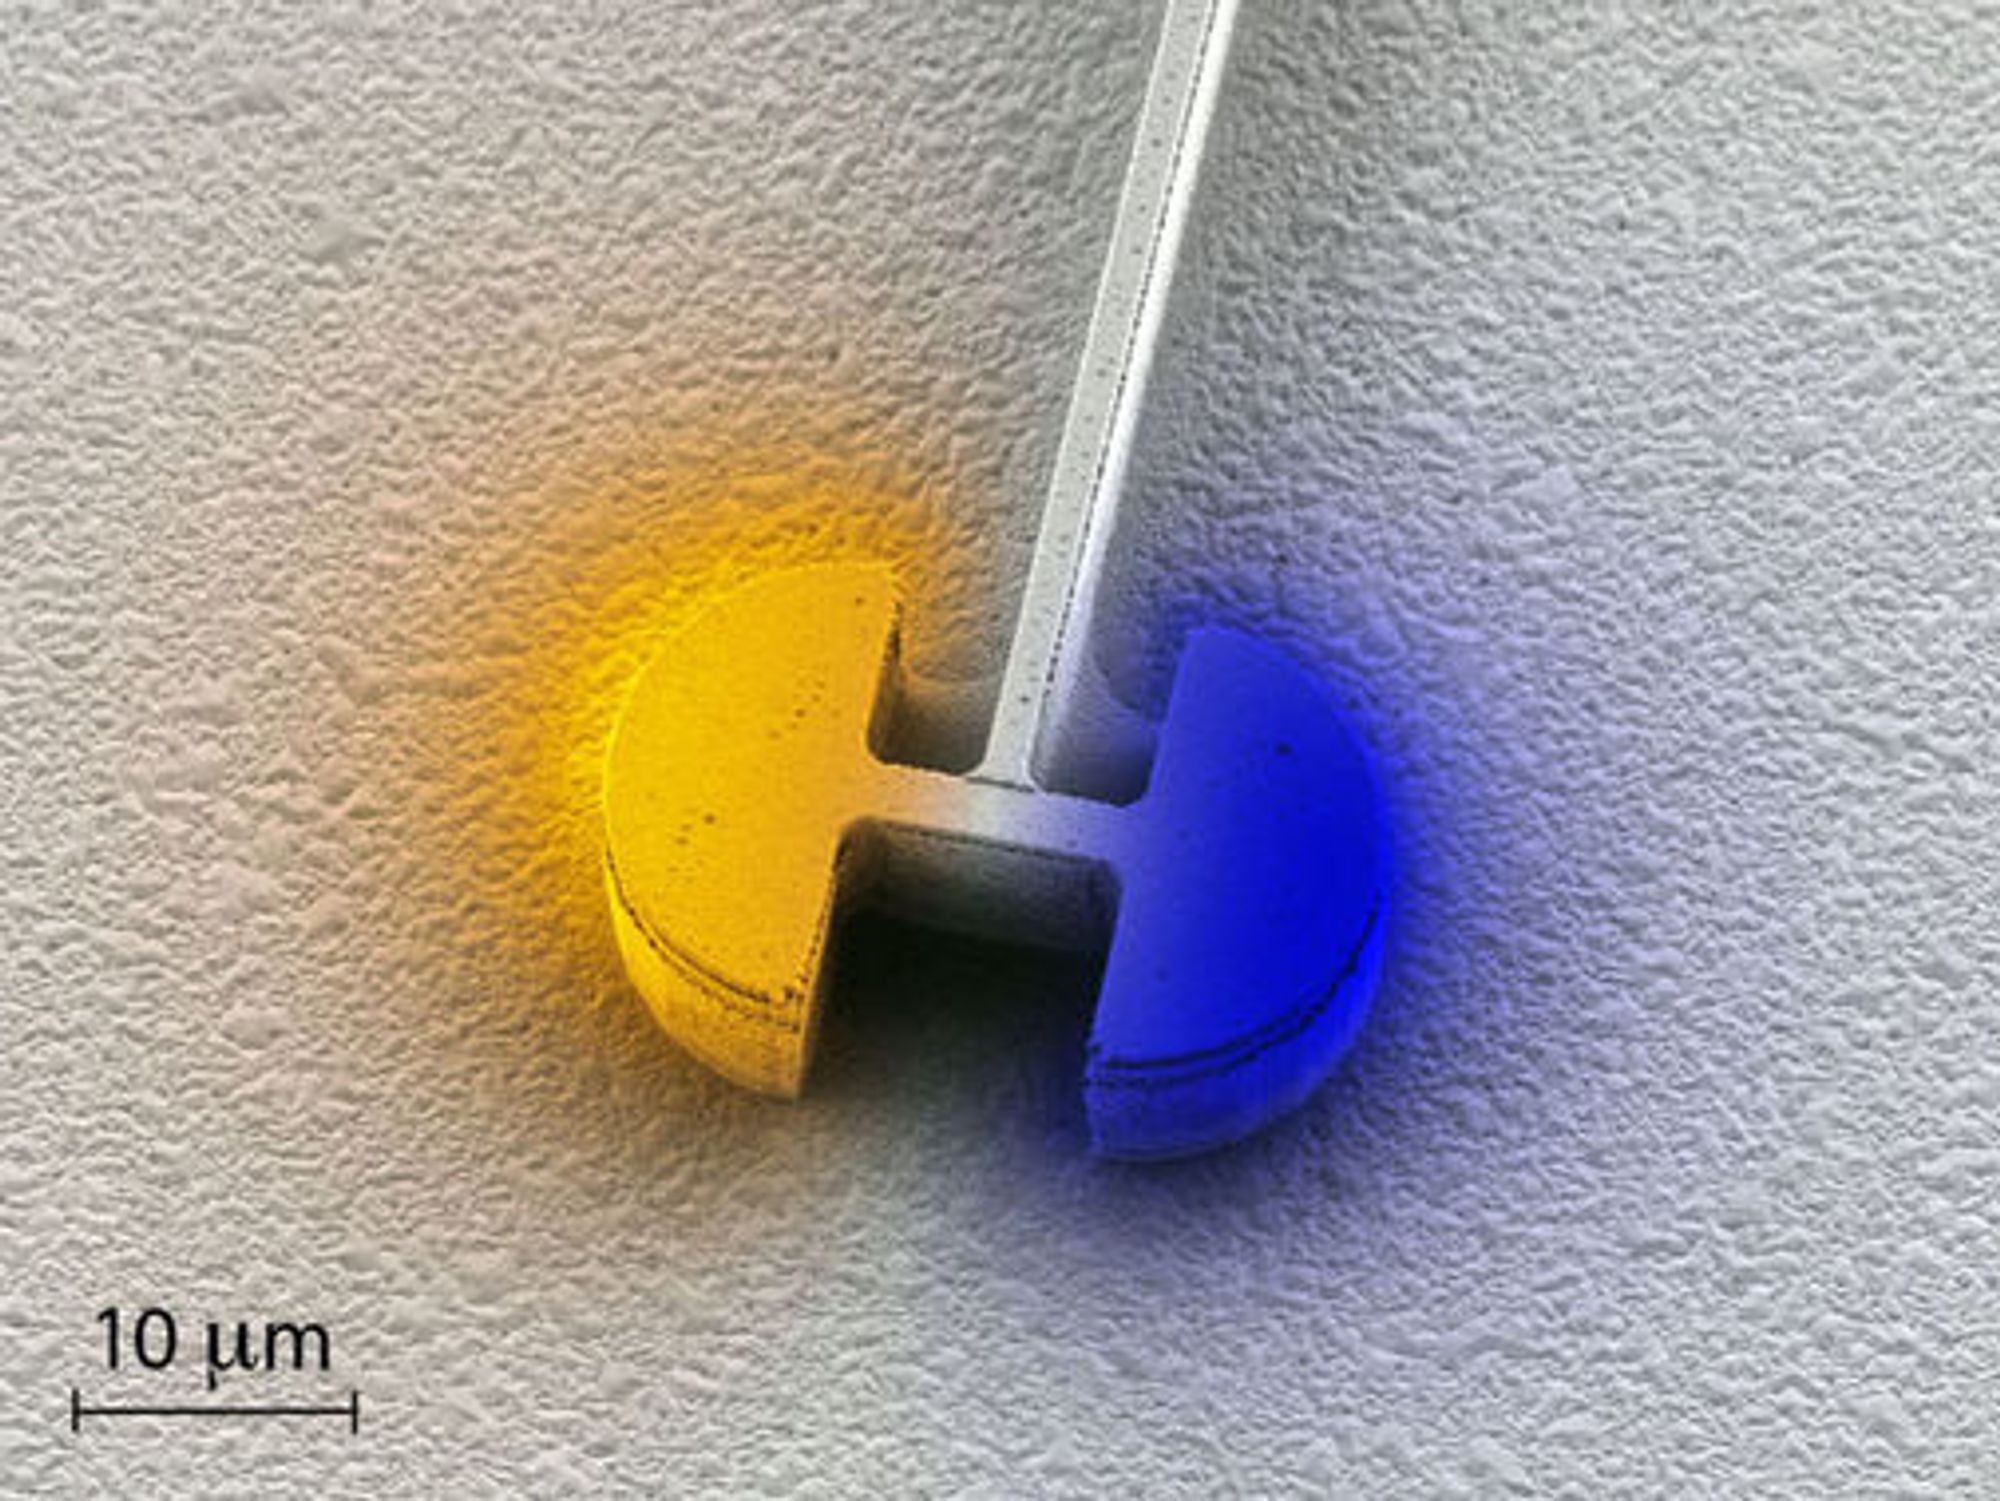 Den sentrale delen av den nye mikrolaseren er den elektriske resonatoren. Den består av to halvsirkelformede kondensatorer som er forbundet via en induktor. Fargeintensiteten representerer styrken på det elektriske feltet, mens selve fargen representerer polariteten.